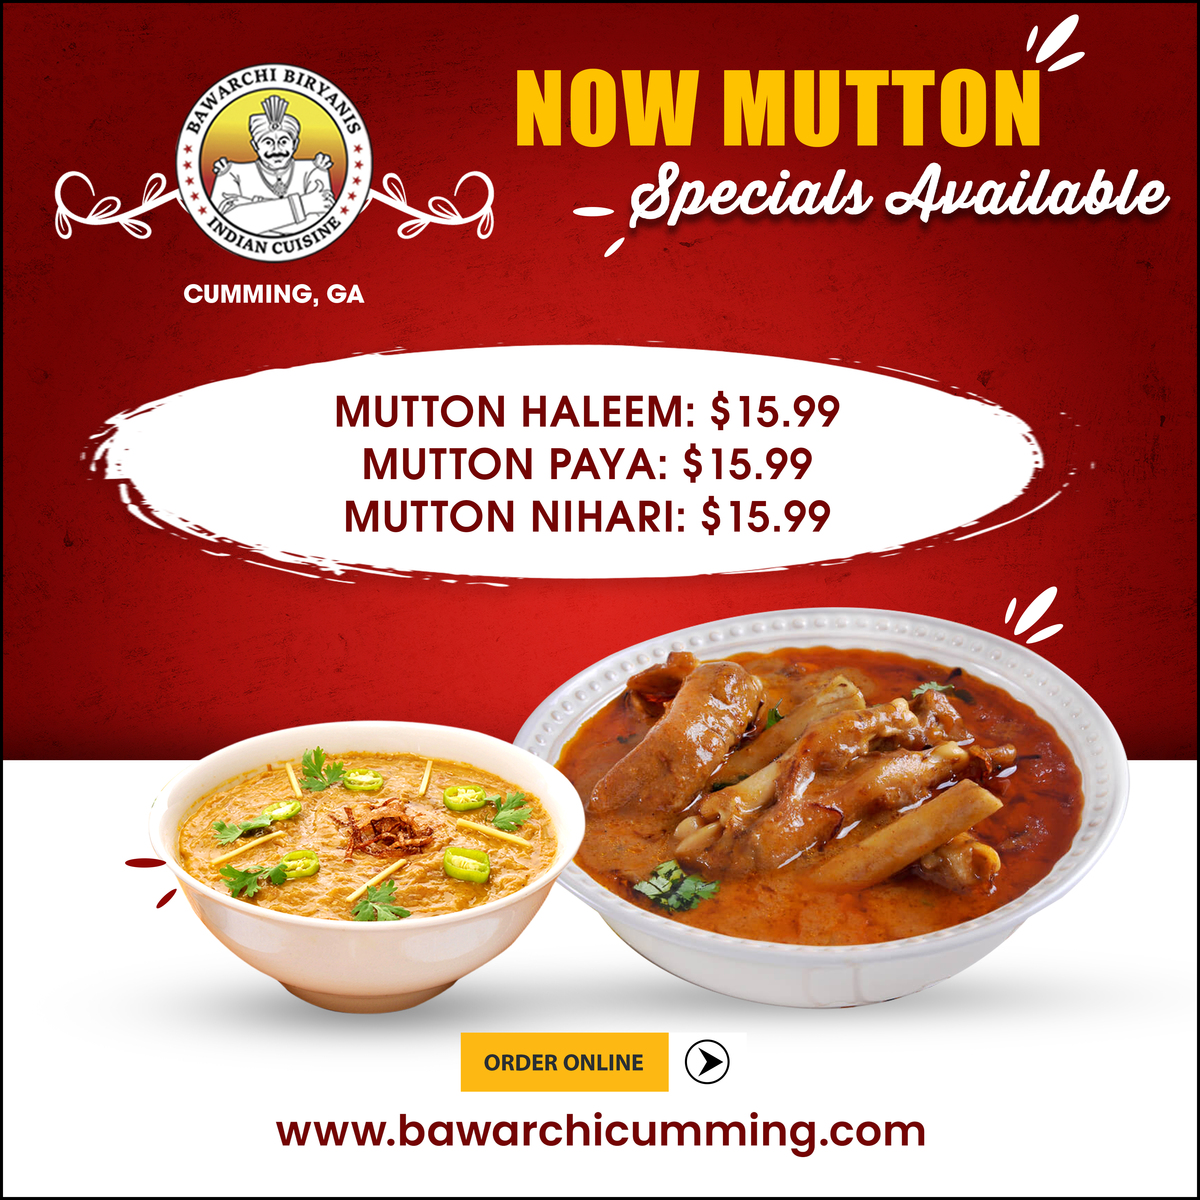 Mutton specials